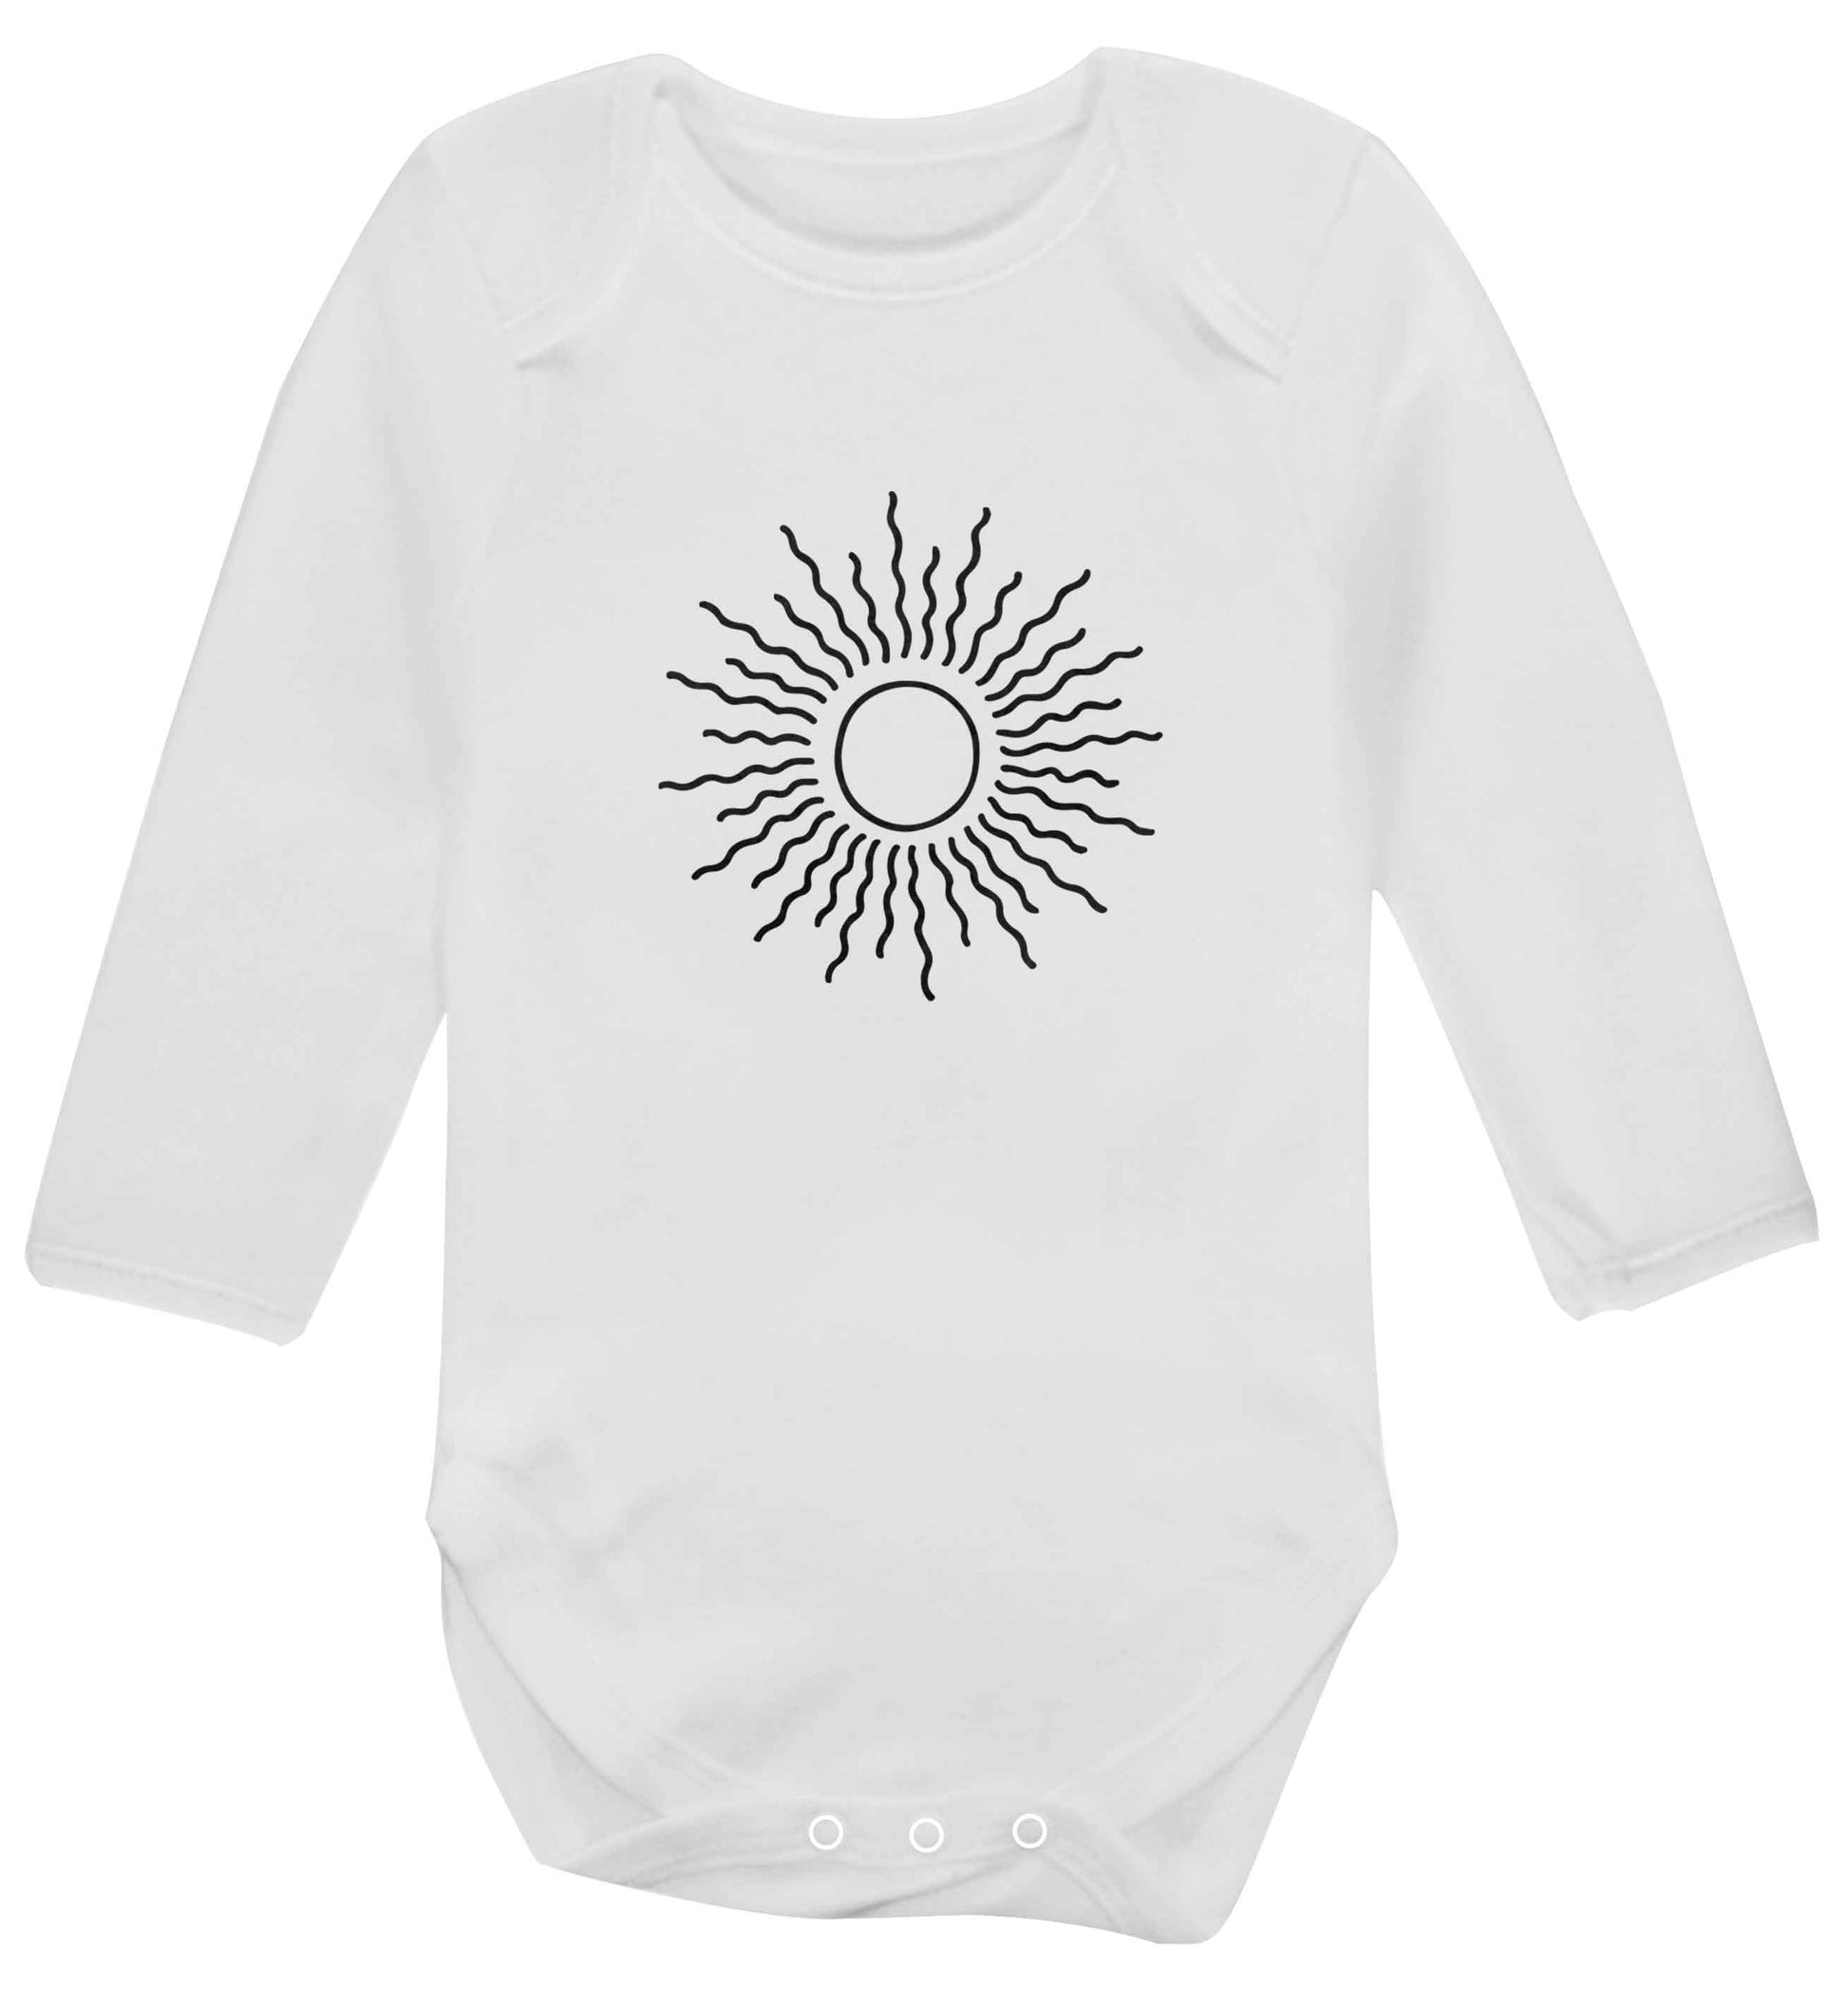 Sun illustration baby vest long sleeved white 6-12 months